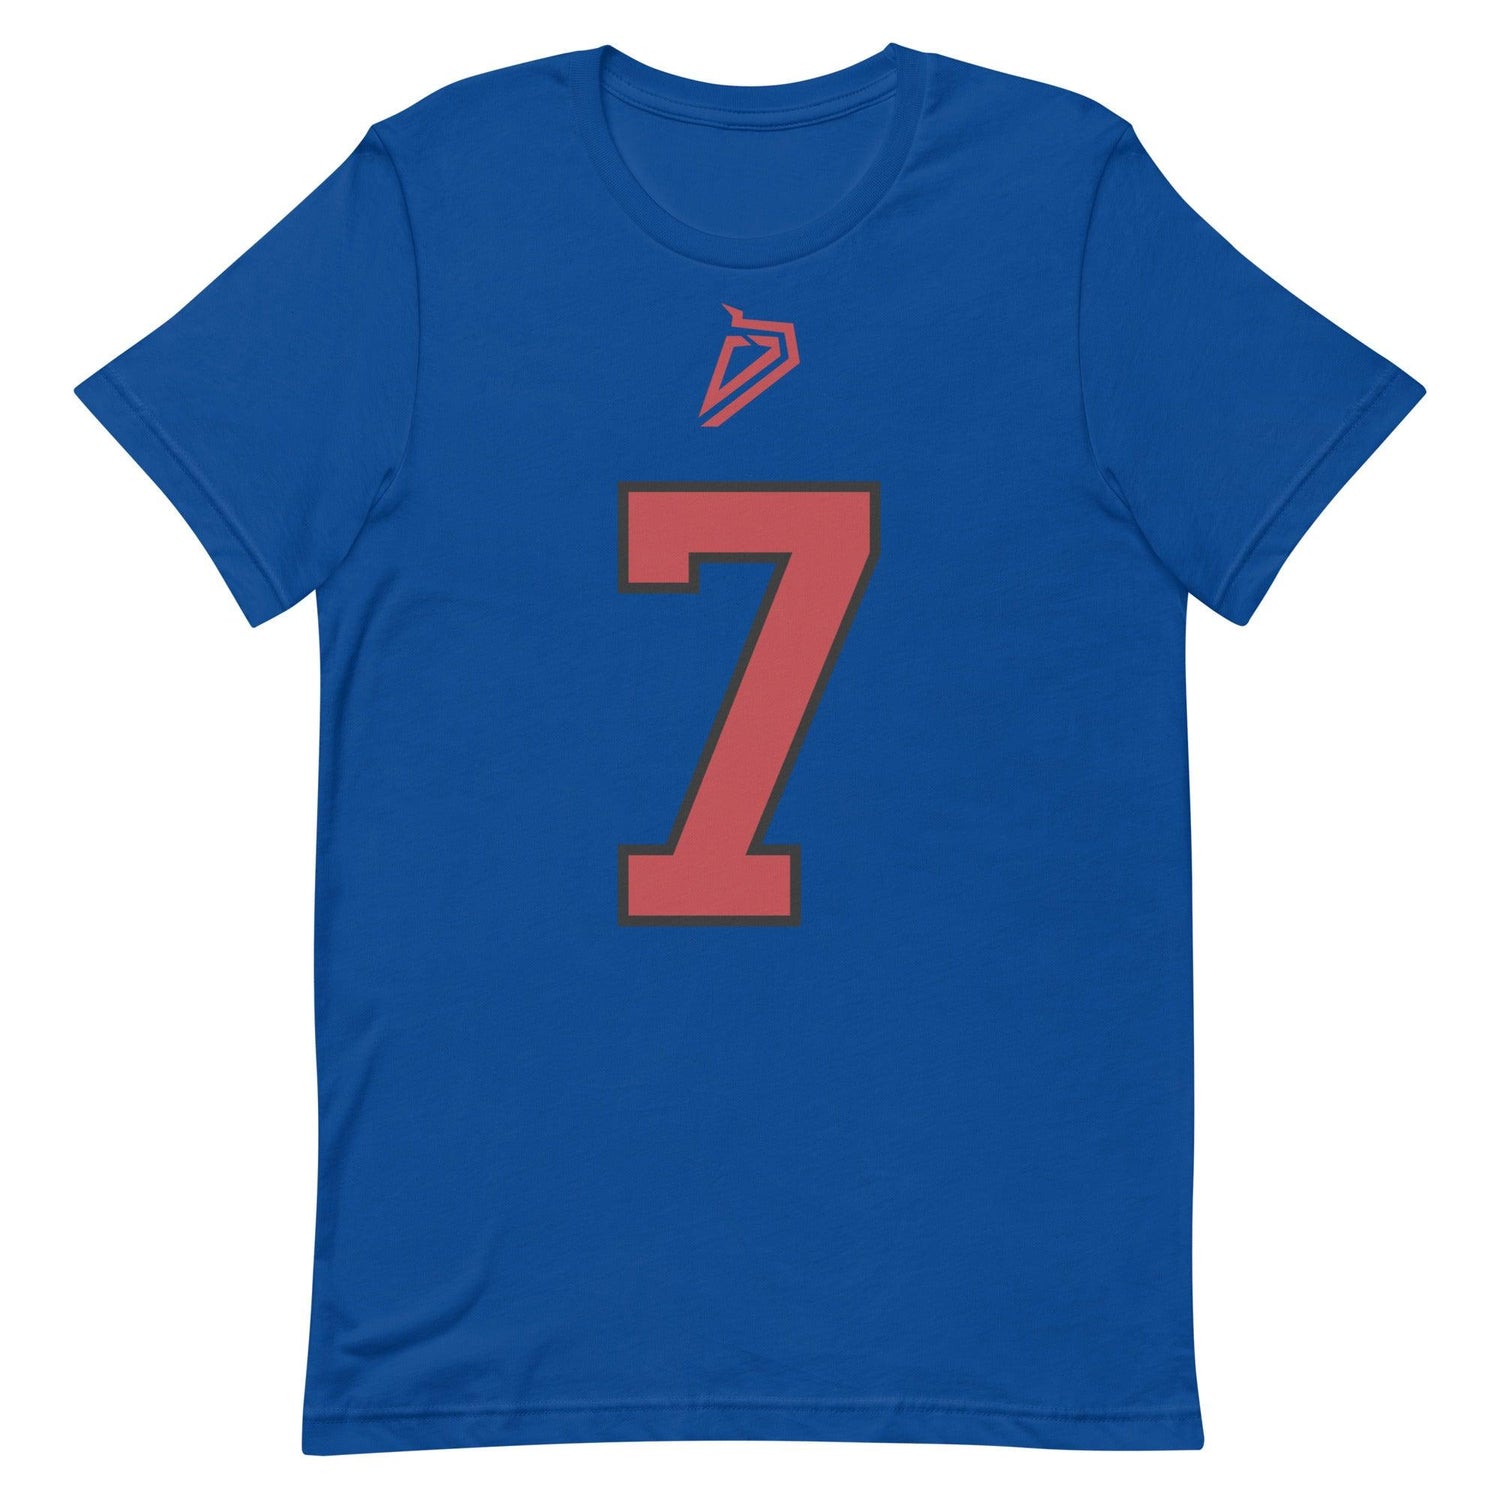 Daewood Davis "Jersey" t-shirt - Fan Arch